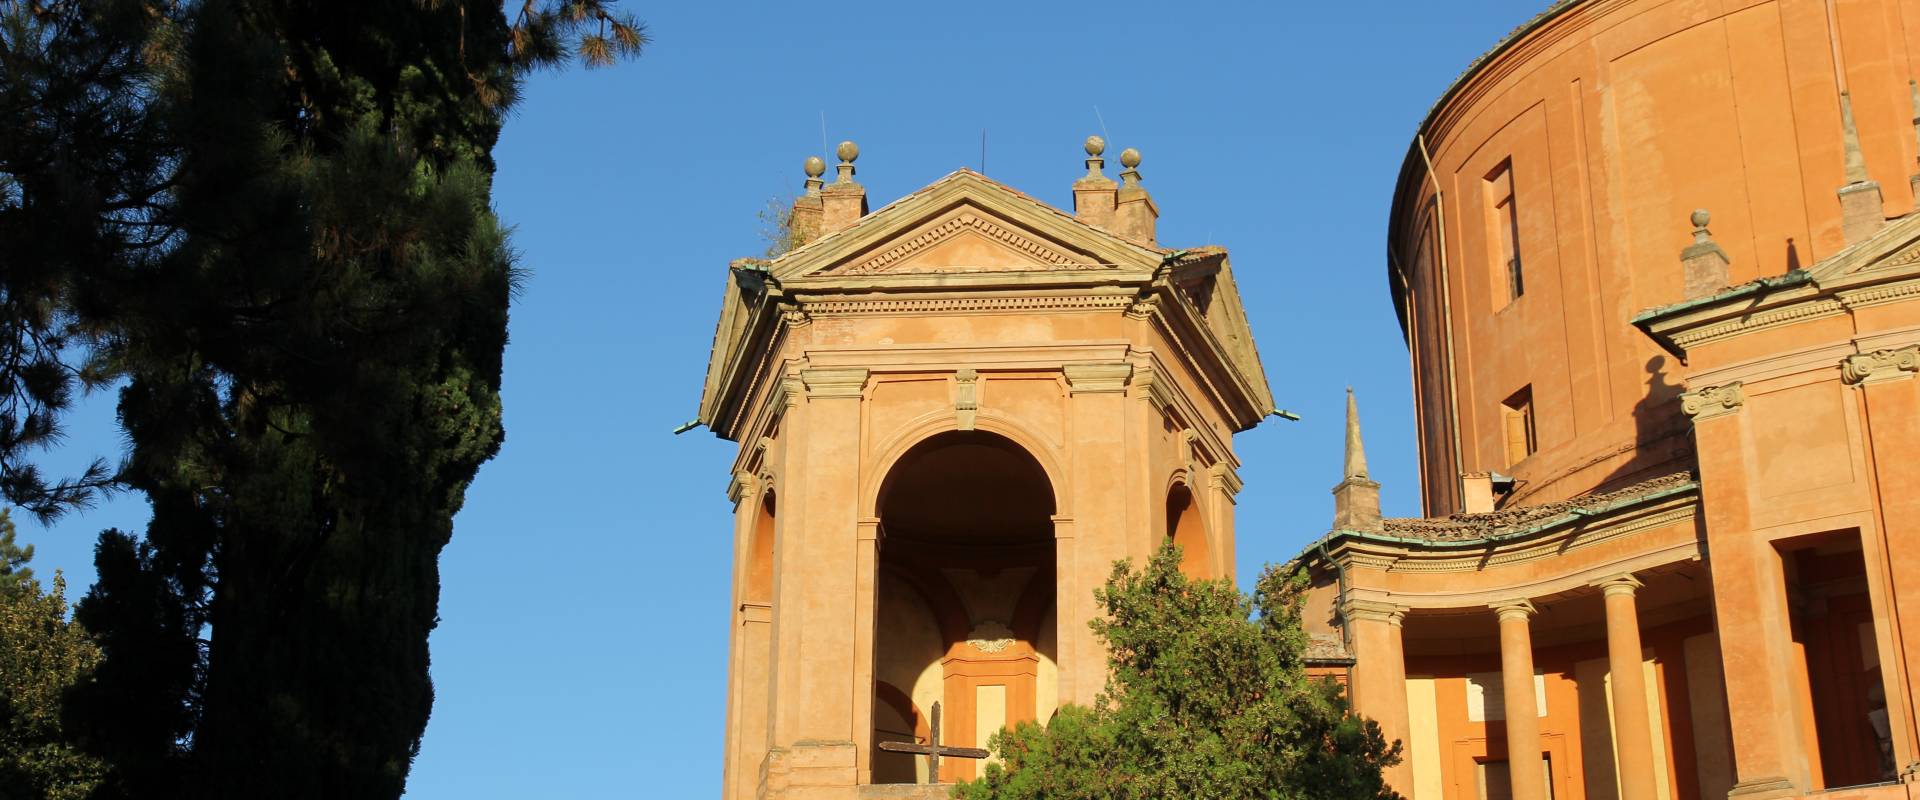 Bologna, santuario della Madonna di San Luca (18) photo by Gianni Careddu